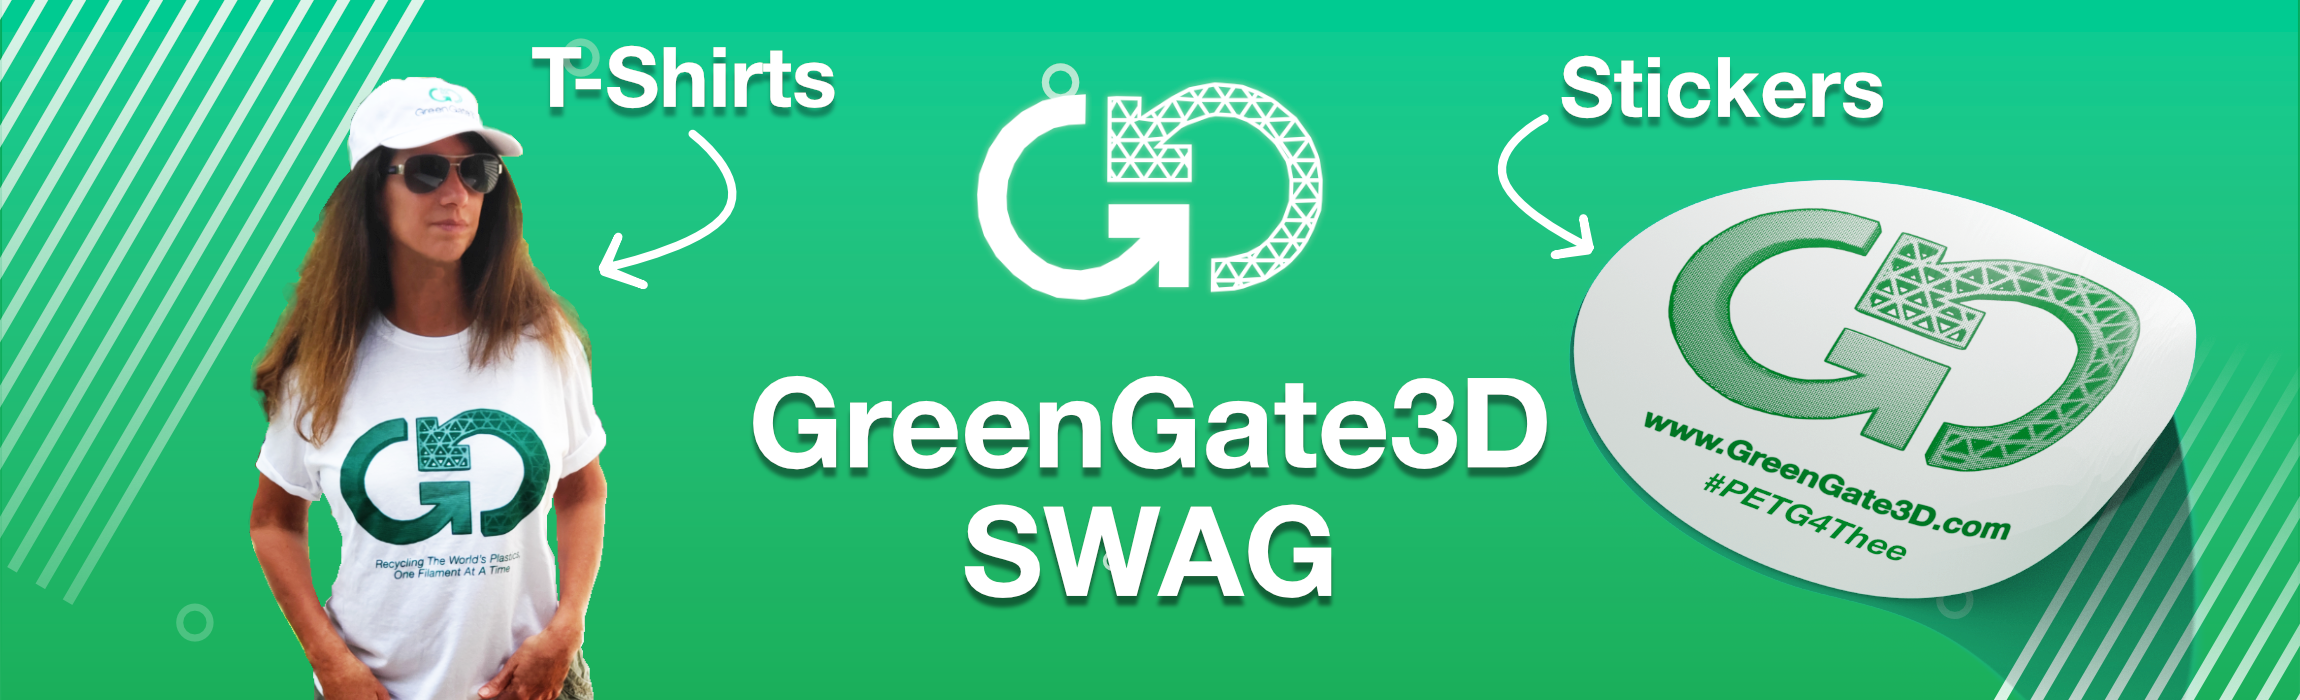 GreenGate3D SWAG